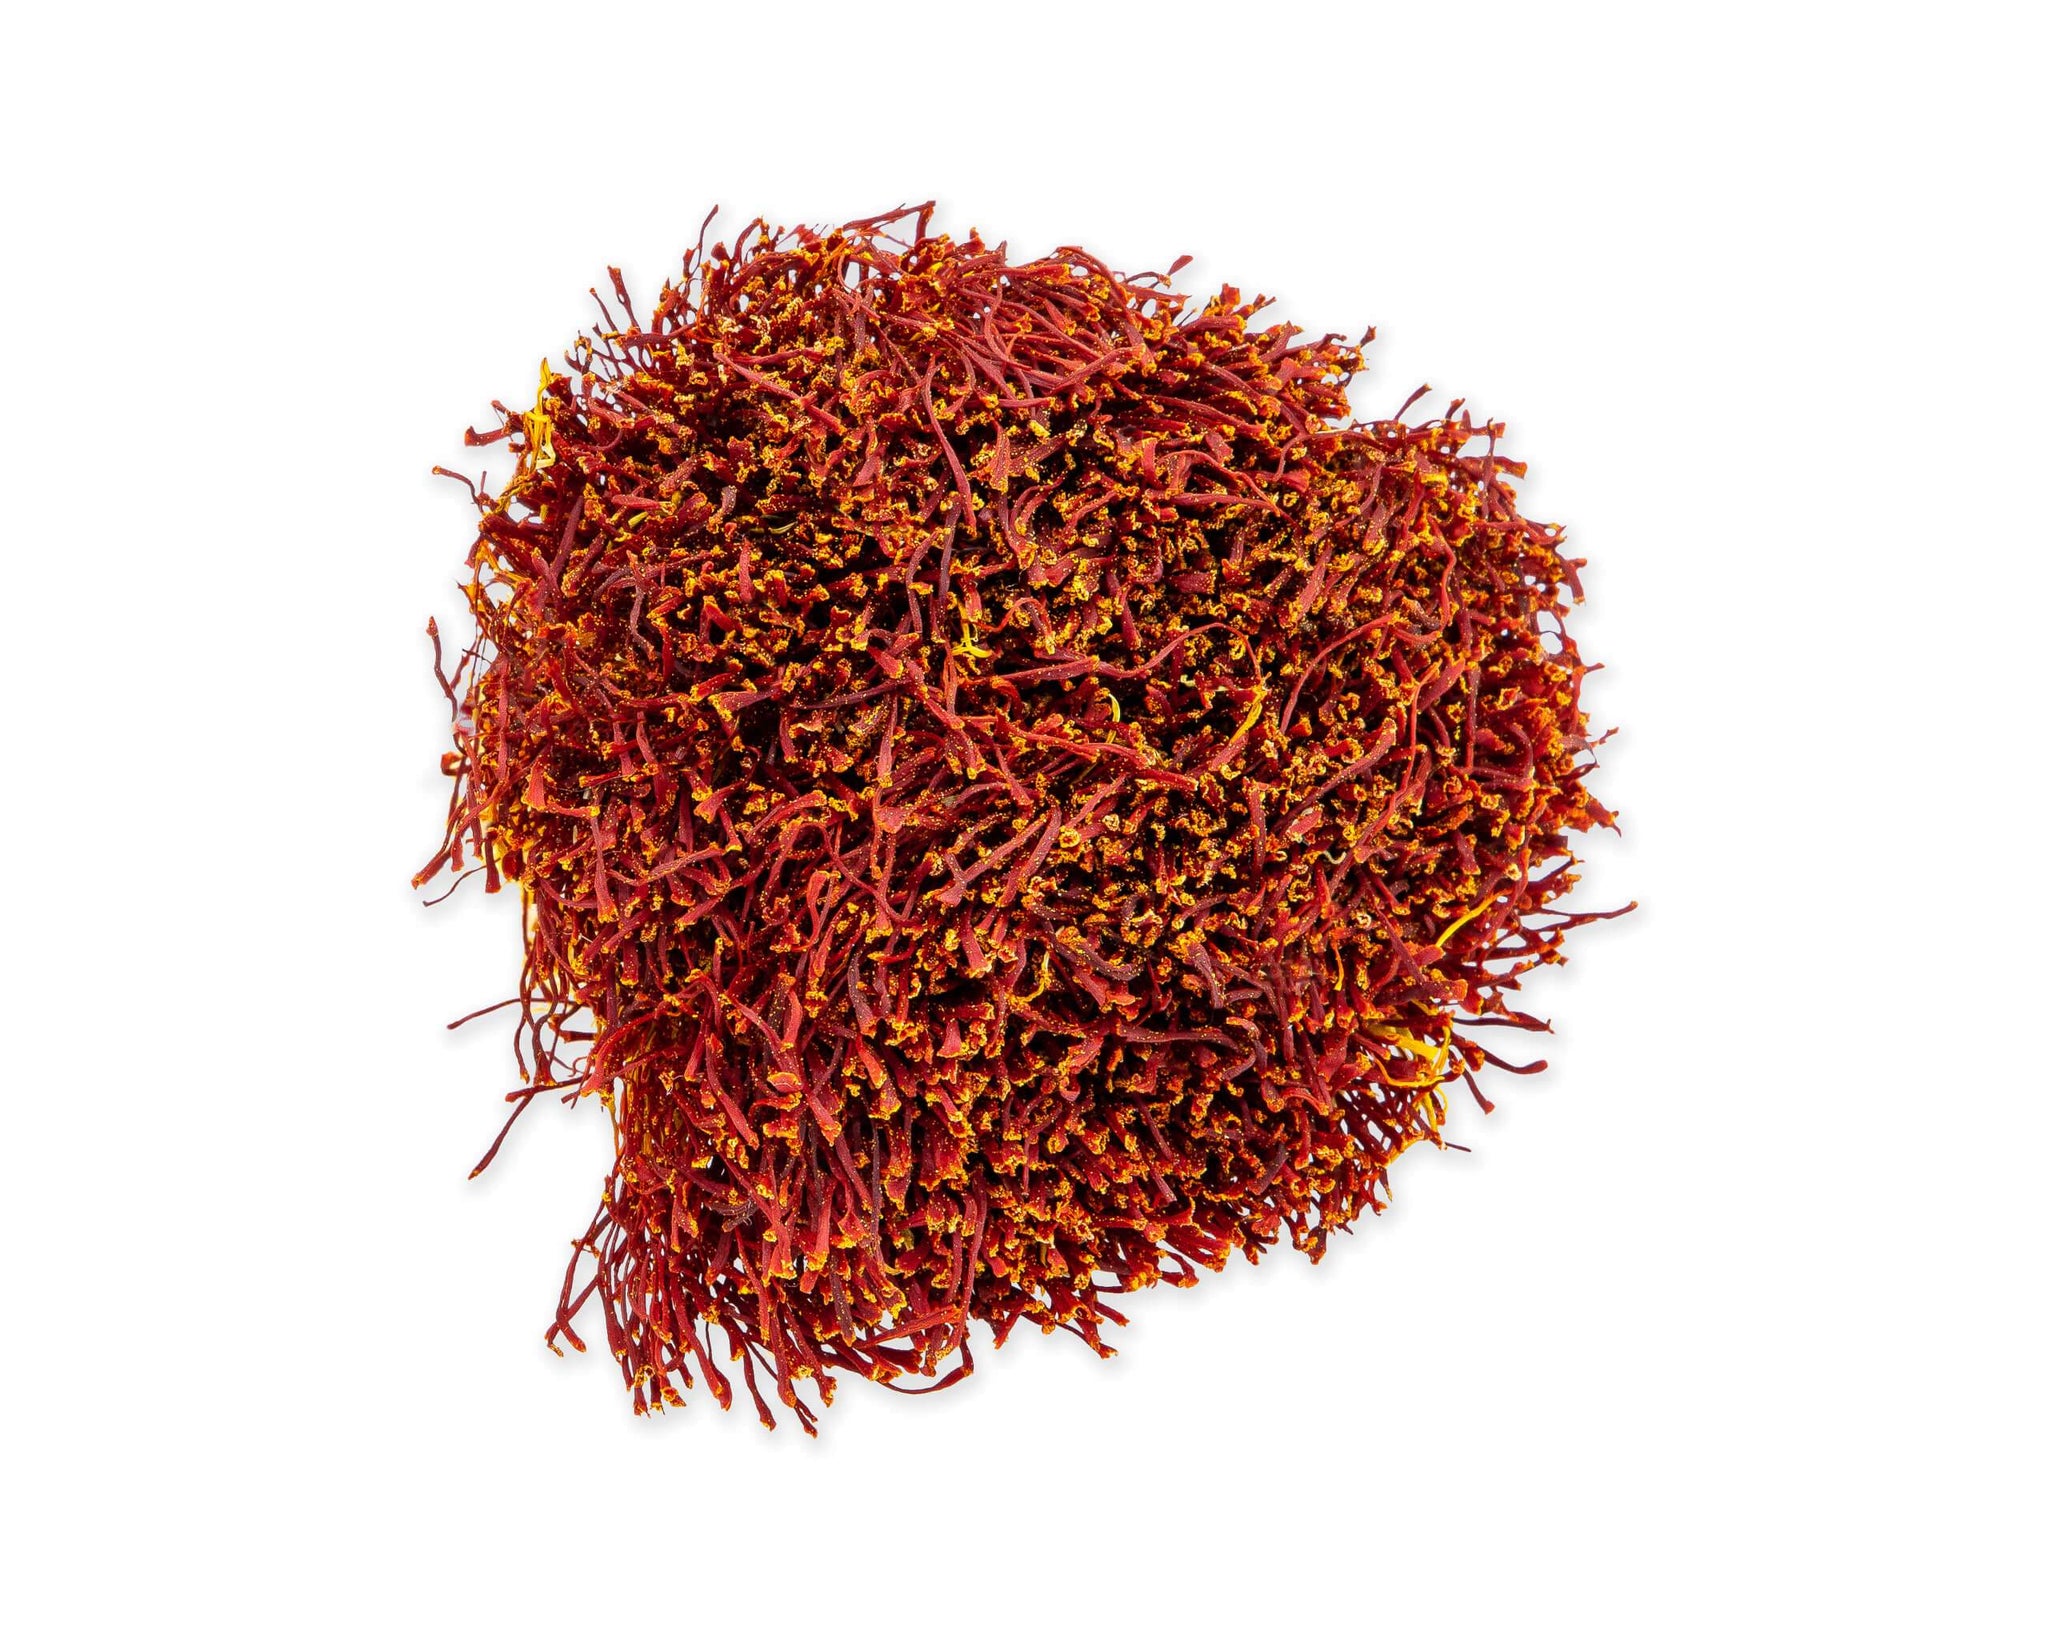 Bunch Saffron, Dasteh Saffron from Afghanistan spices Slofoodgroup 